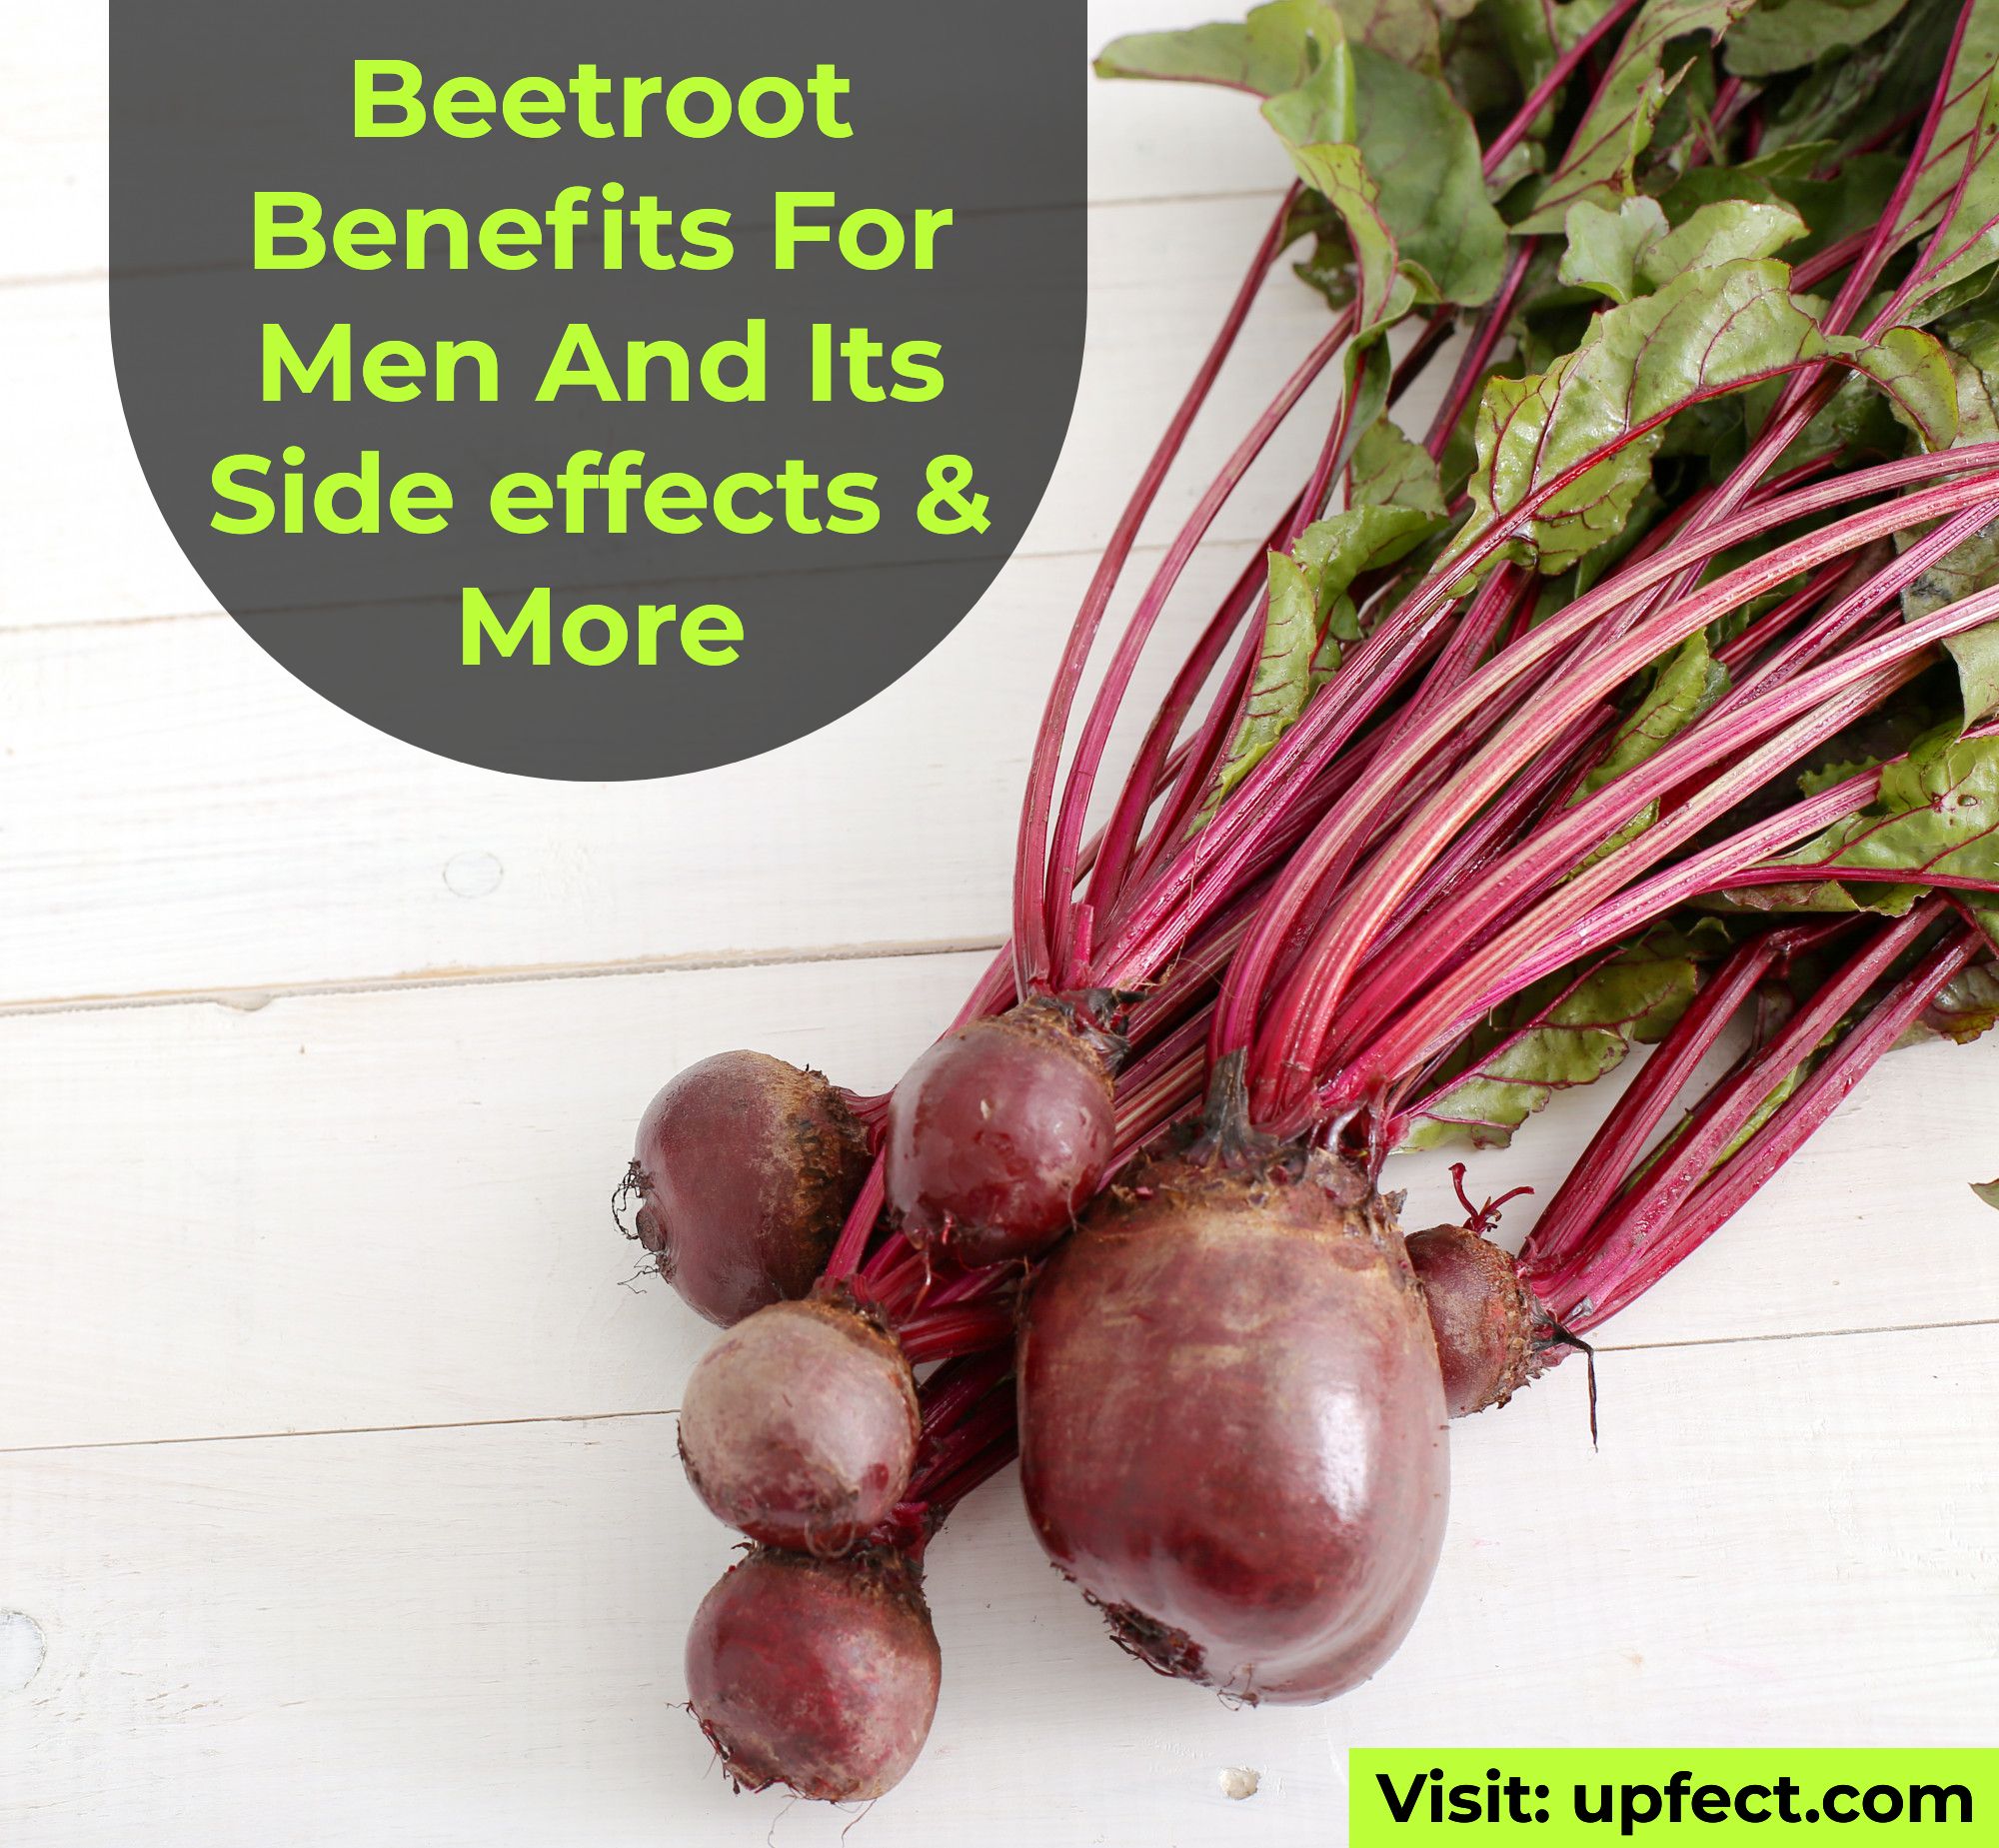 Beetroot Benefits For Men